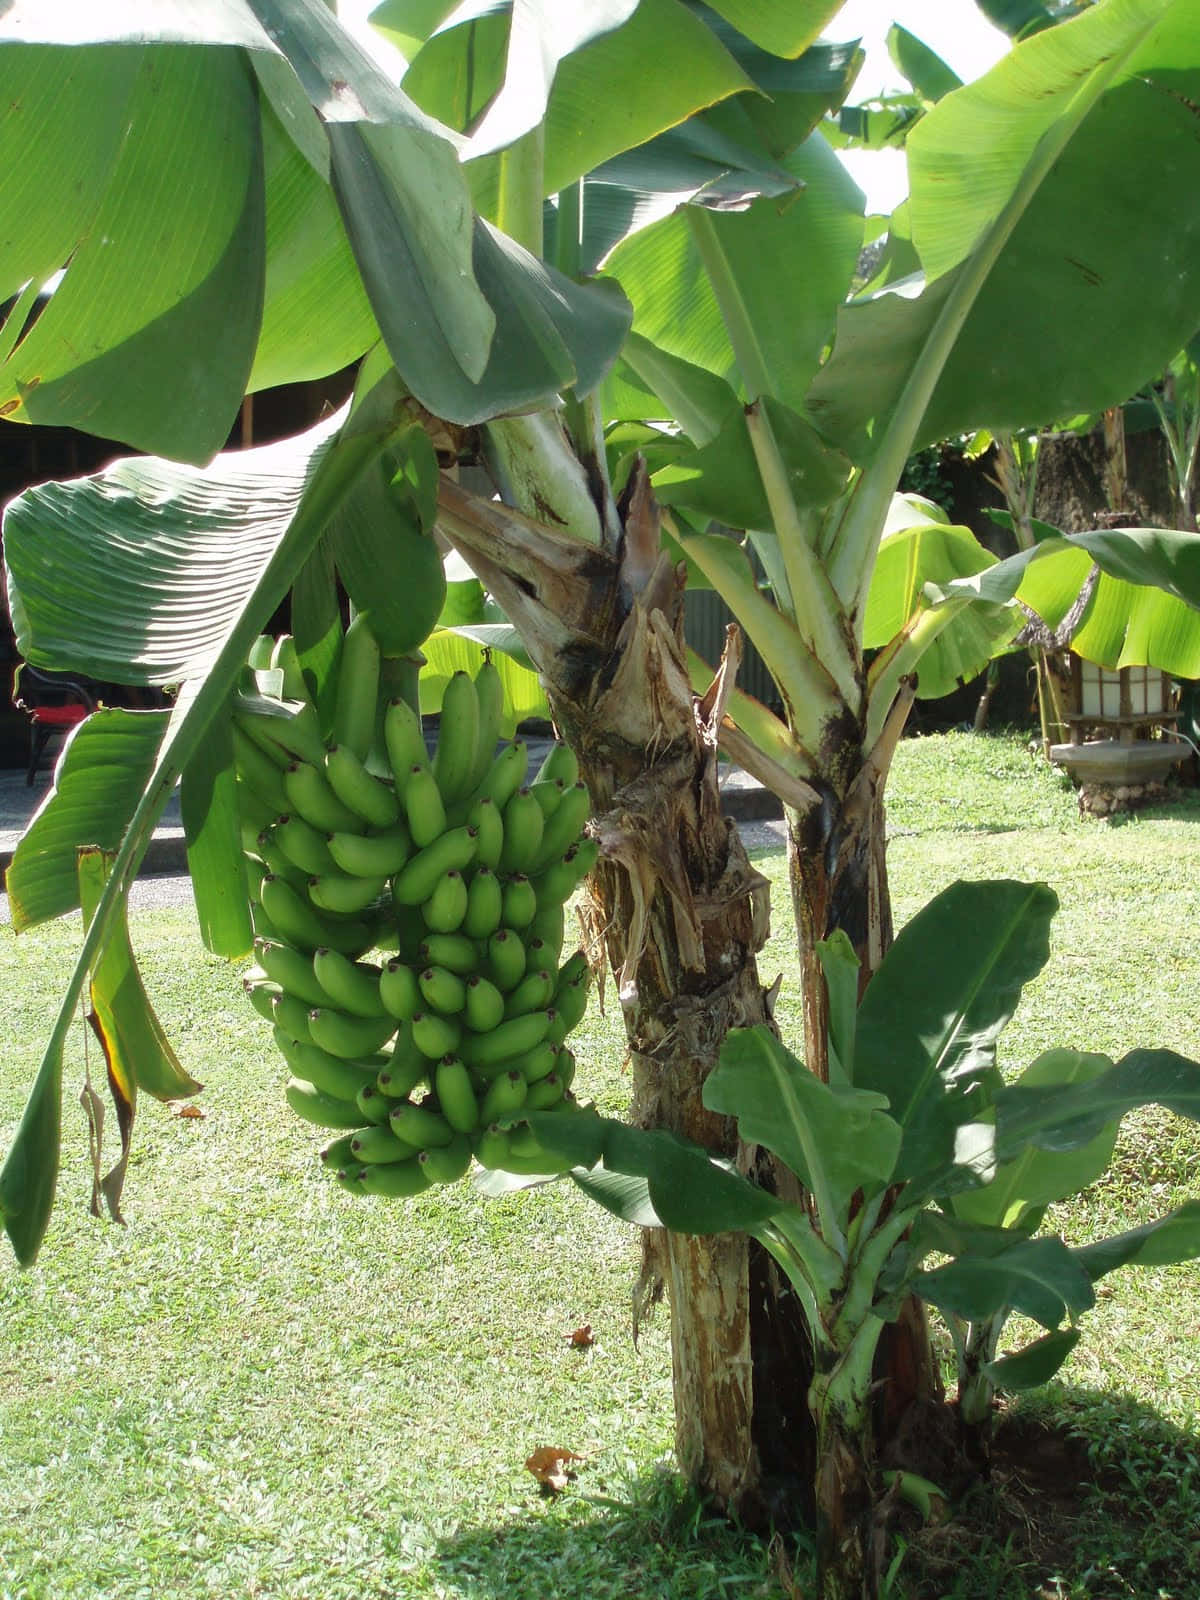 Alberodi Banane Nel Suo Ambiente Naturale